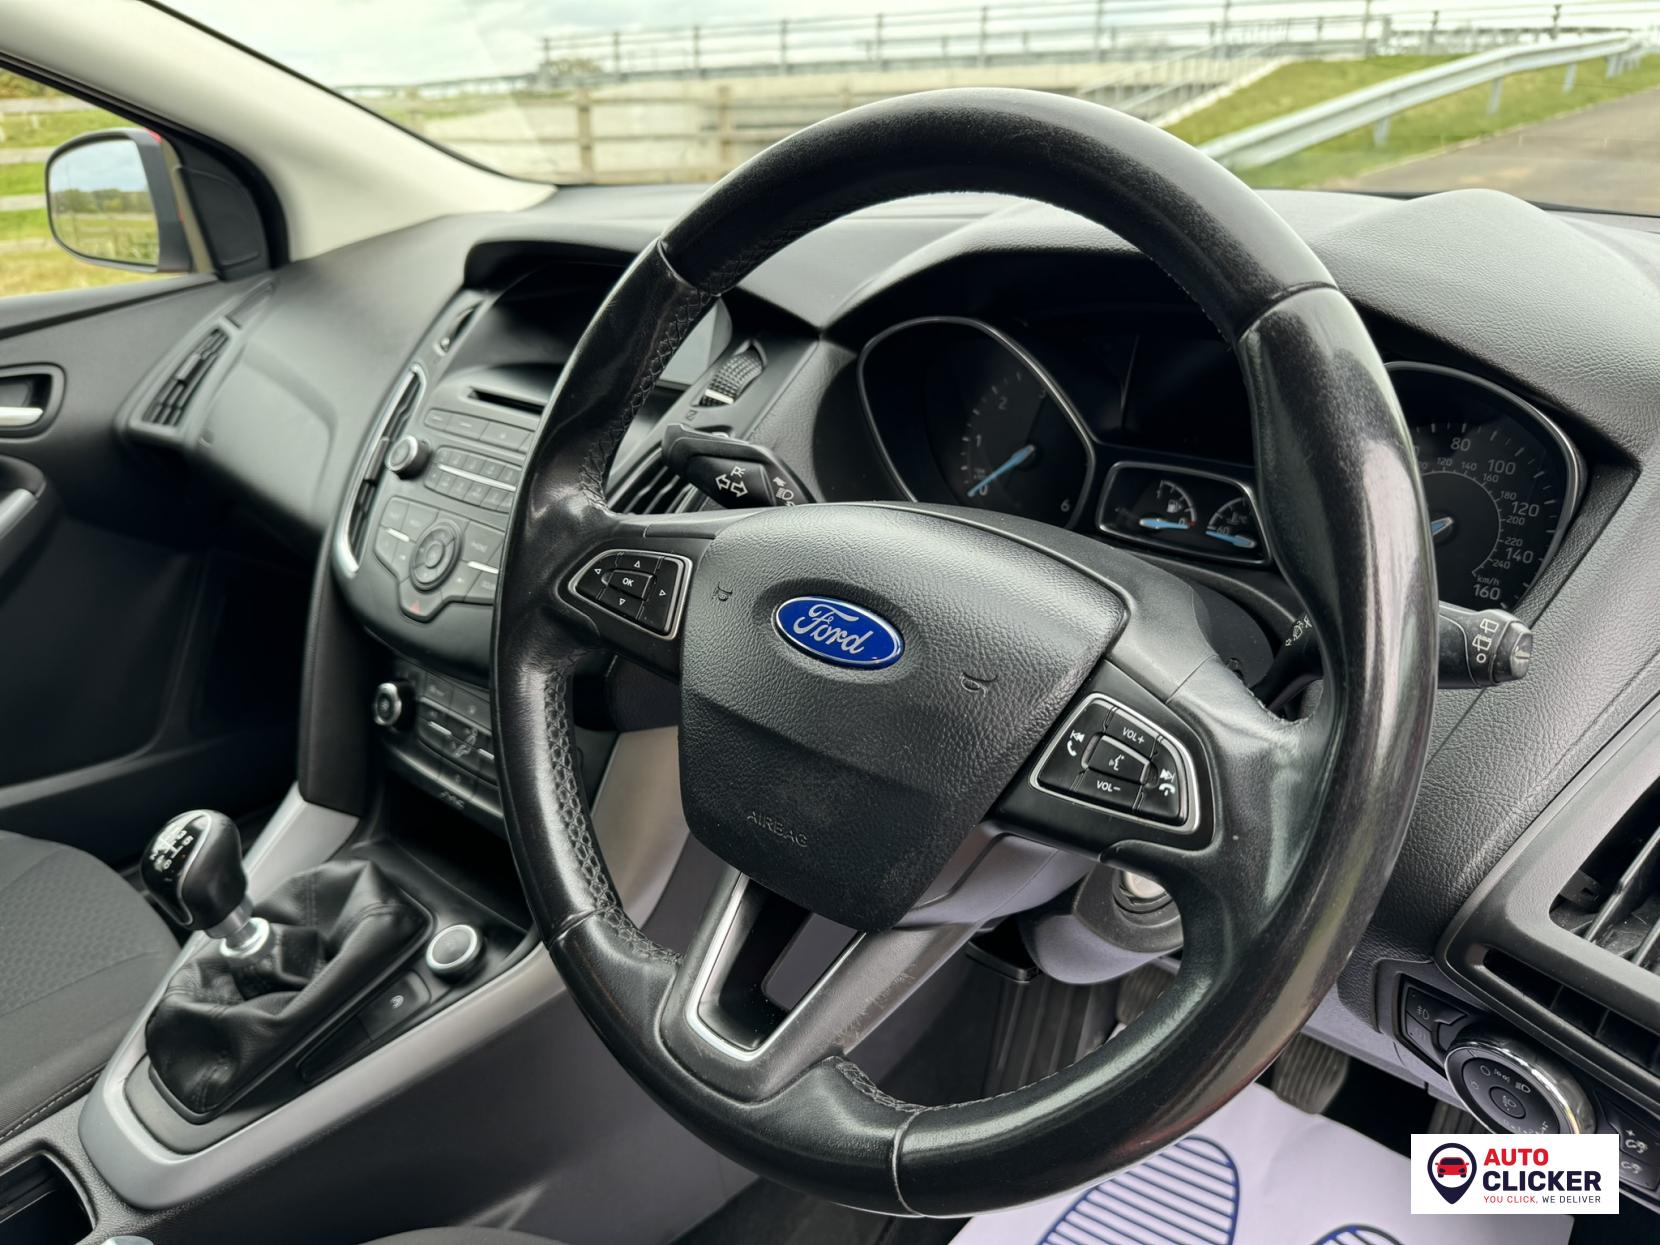 Ford Focus 1.5 TDCi Zetec Hatchback 5dr Diesel Manual Euro 6 (s/s) (120 ps)